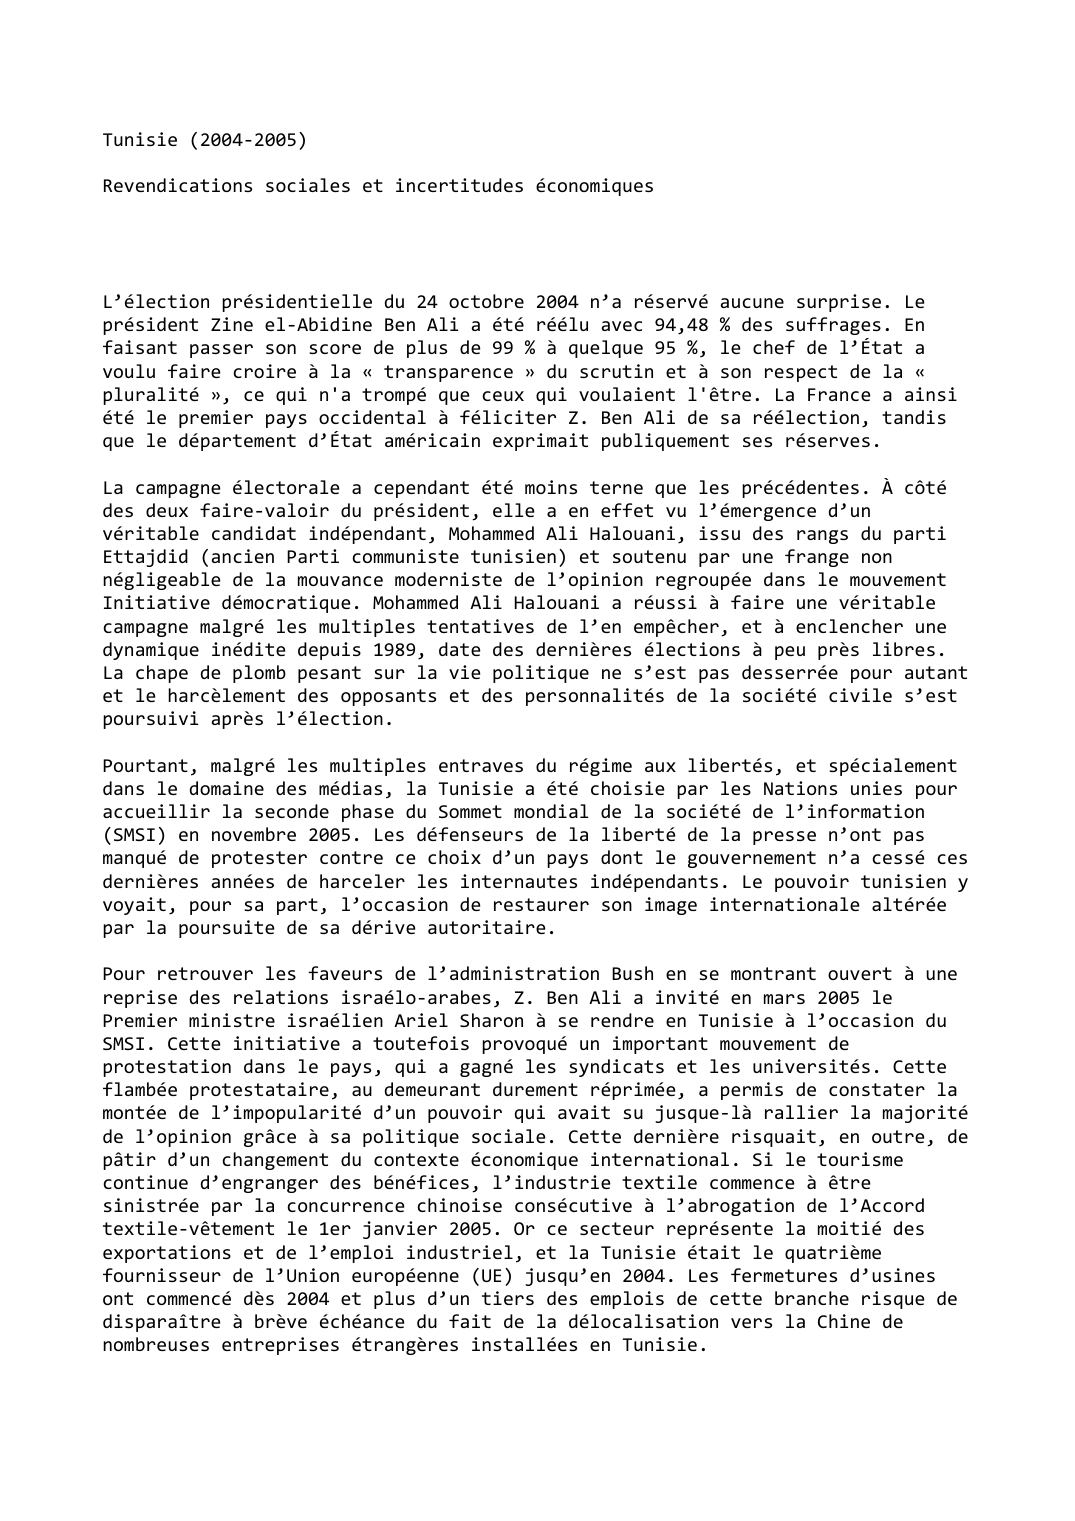 Prévisualisation du document Tunisie (2004-2005)

Revendications sociales et incertitudes économiques